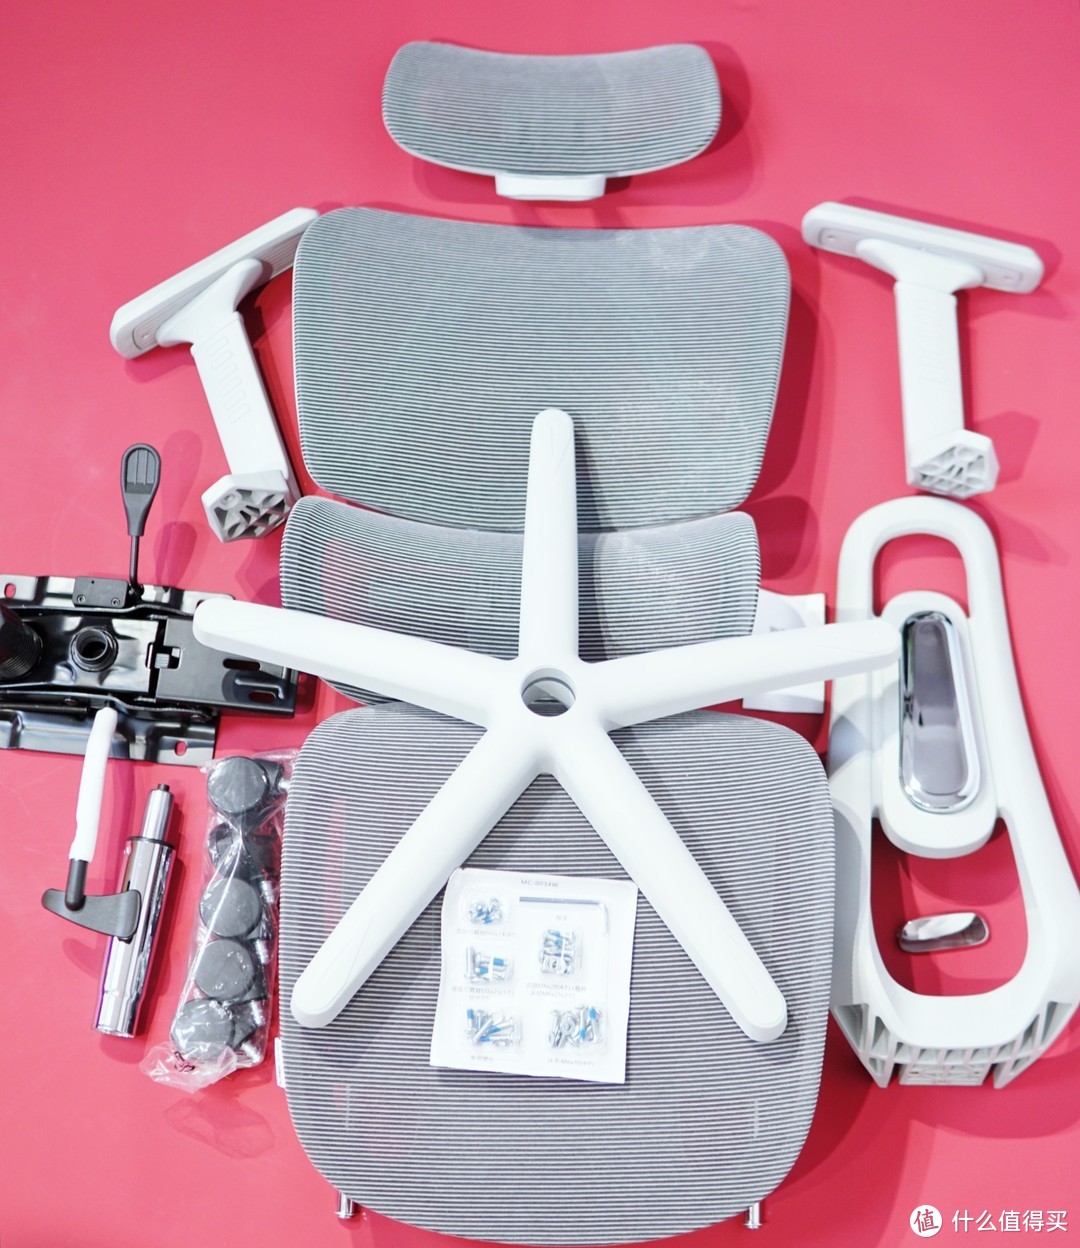 还在买GL8改装椅?1049全身可调还能撑腰的人体工学椅它不香吗?!求求别做大冤种!